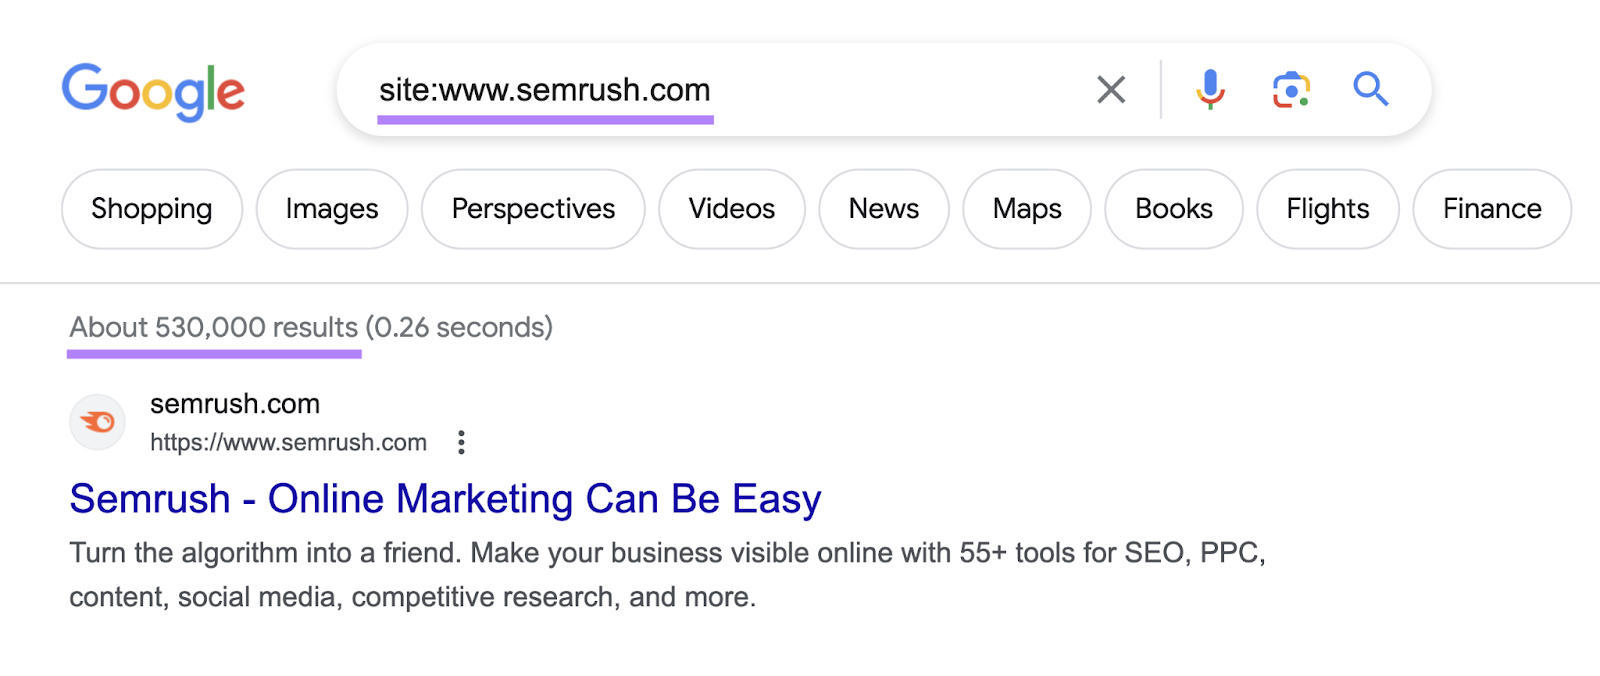 Google hiển thị khoảng 530.000 kết quả cho tìm kiếm “site:www.semrush.com”